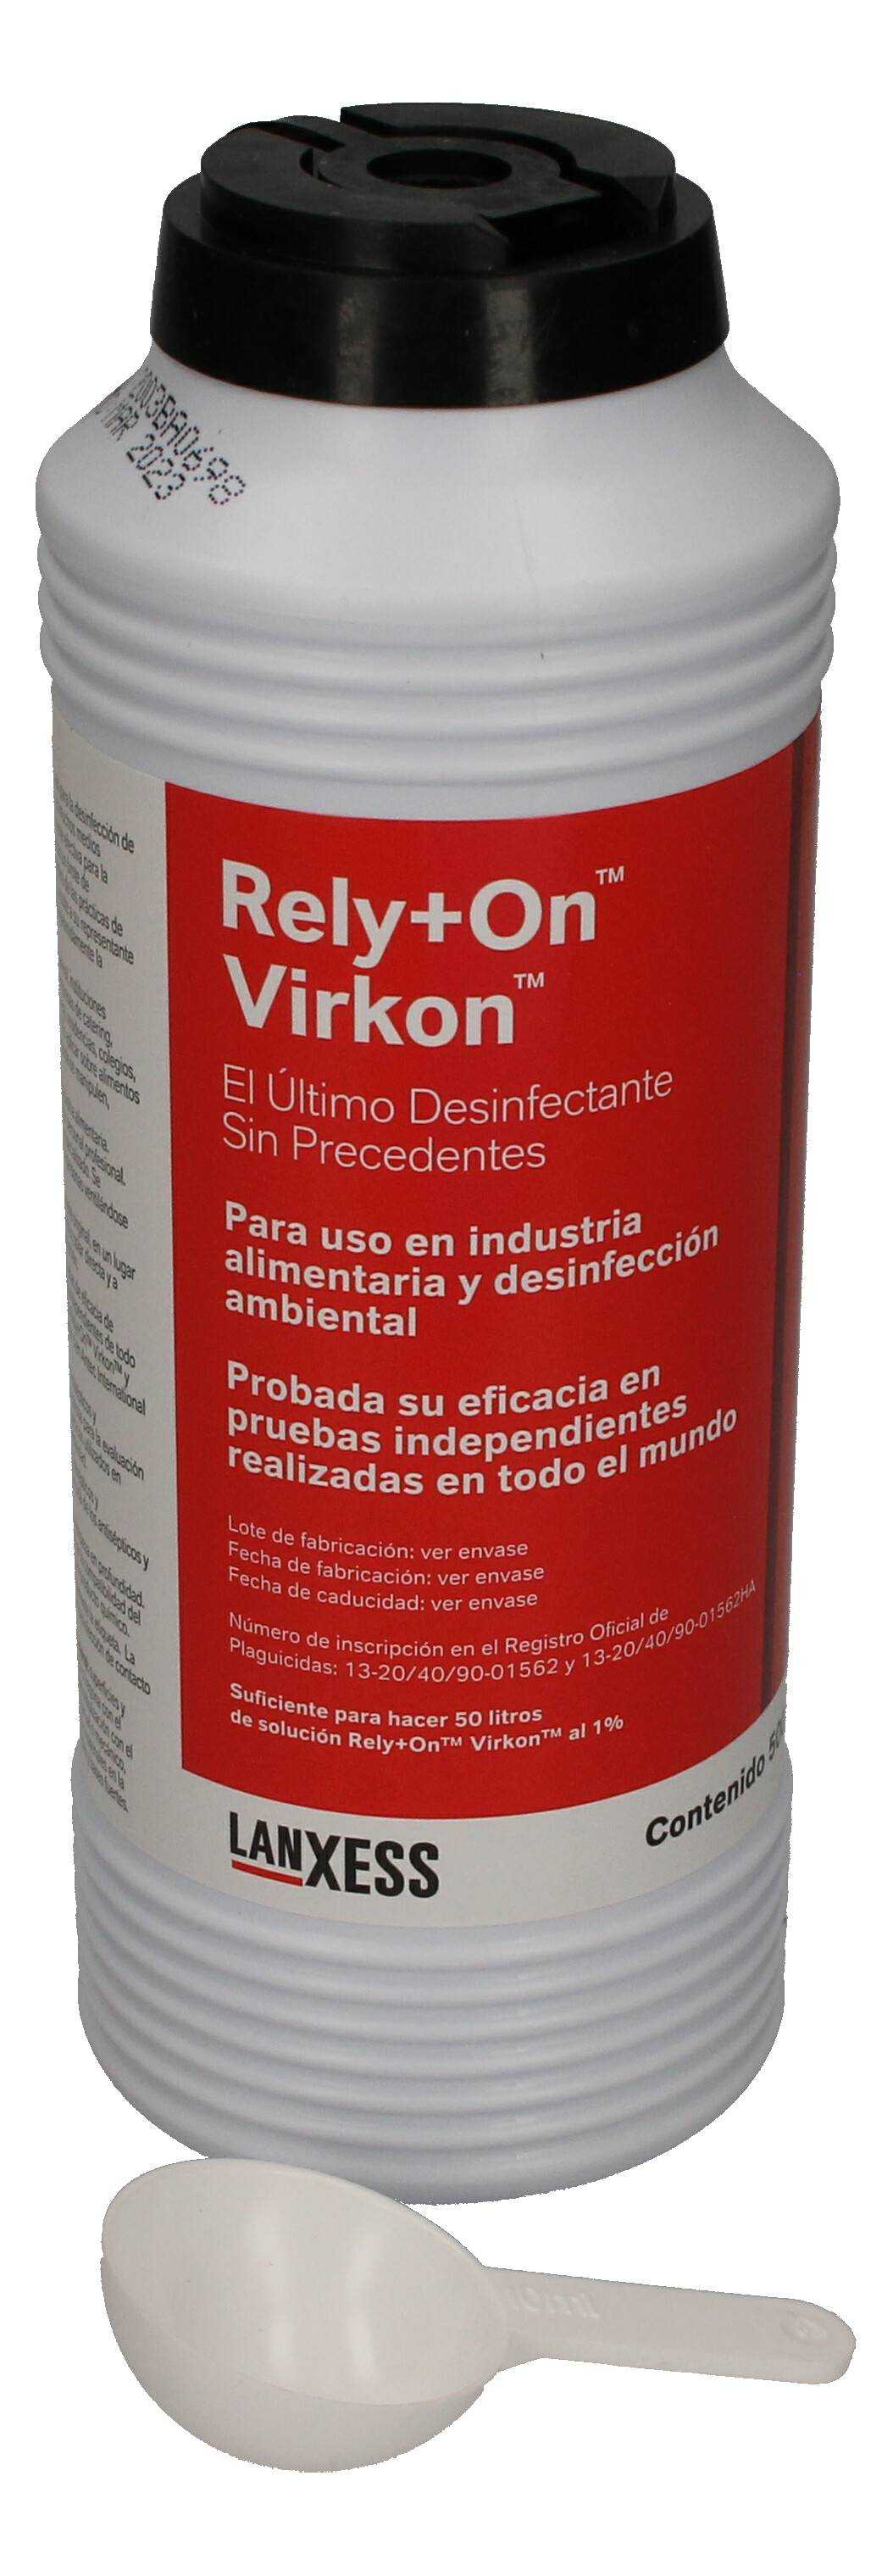 RELY+ON VIRKON Flacone disinfettante per superfici ad alto spettro 500 gr. - Immagine 1